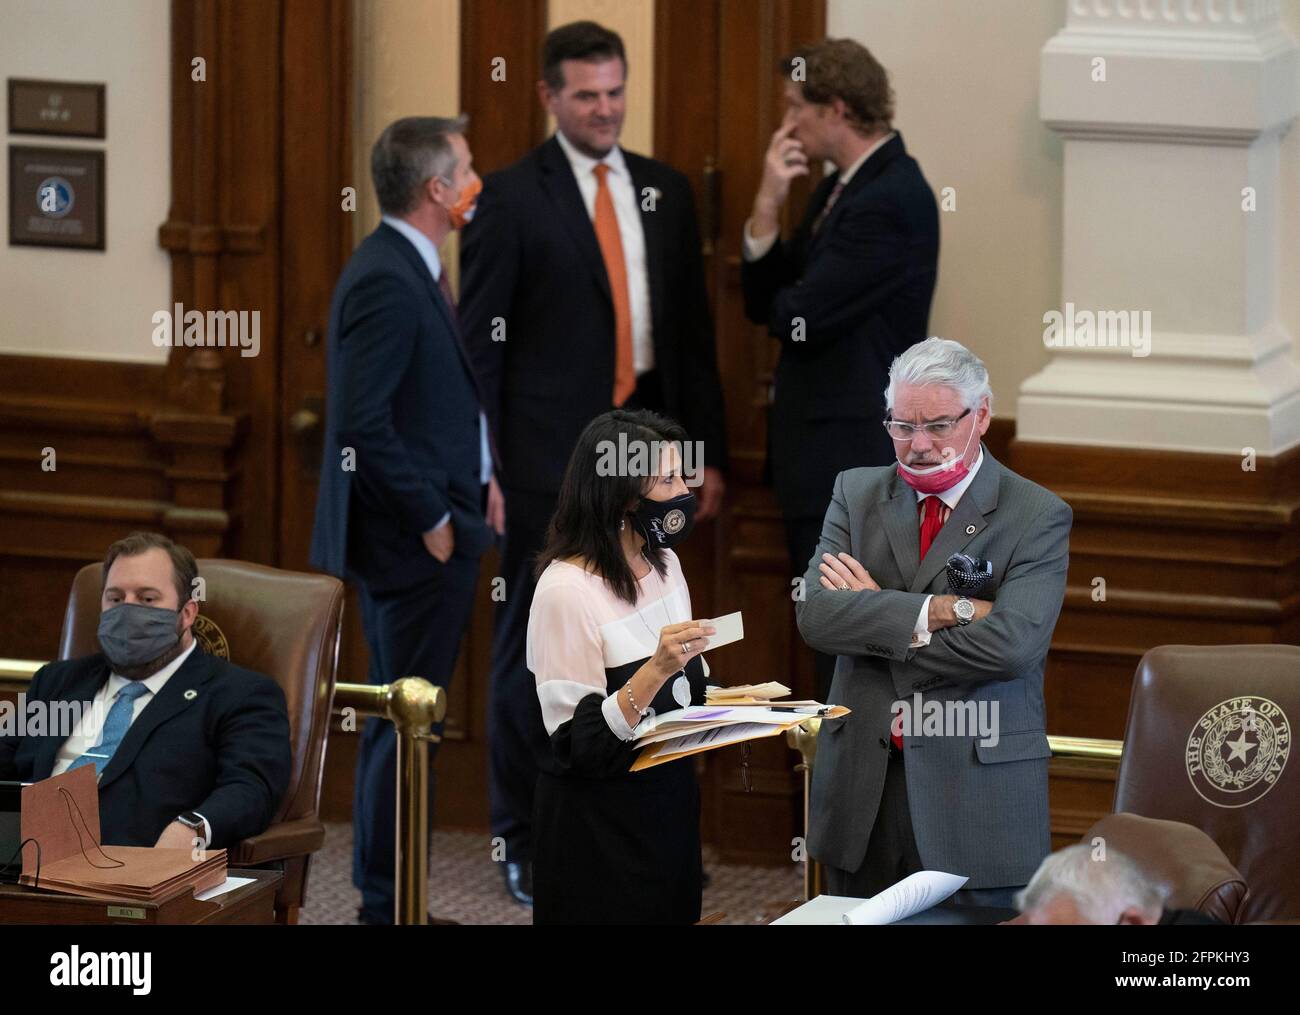 Les législateurs de la Maison du Texas travaillent à négocier, à rédiger des lois et à adopter des projets de loi à la 87e session de l'Assemblée législative du Texas à Austin. Chacun des 150 membres est élu pour un mandat de deux ans. DaN HUBERTY, R-Kingwood (r) parle avec un collègue. Banque D'Images